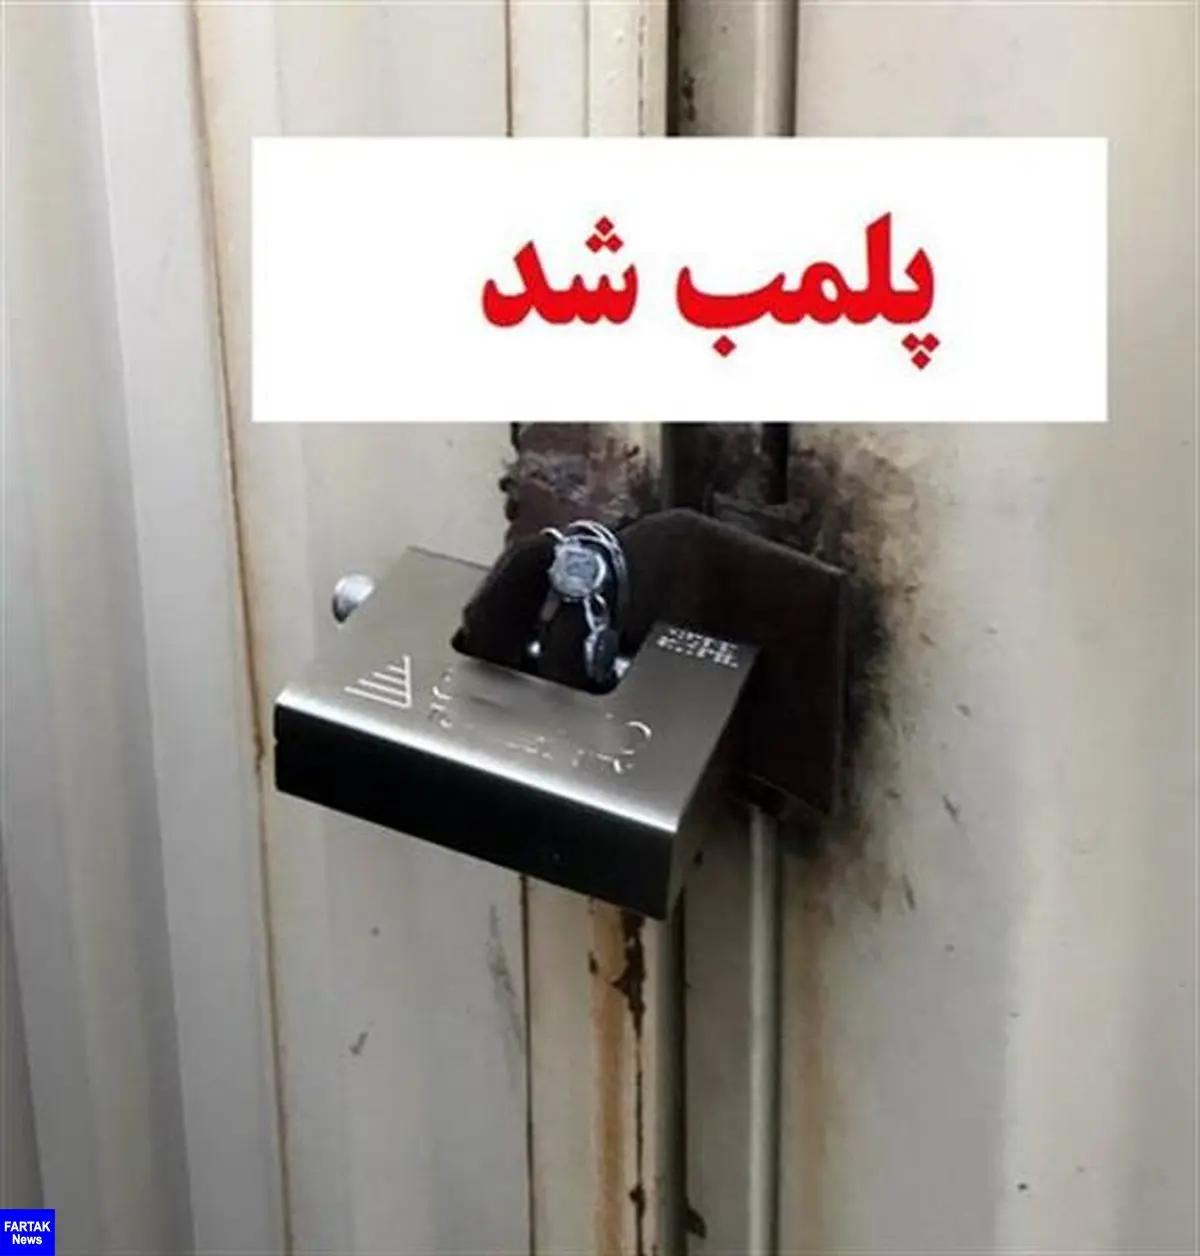 پلمب 4 واحد غیرمجاز پزشکی در کرمانشاه